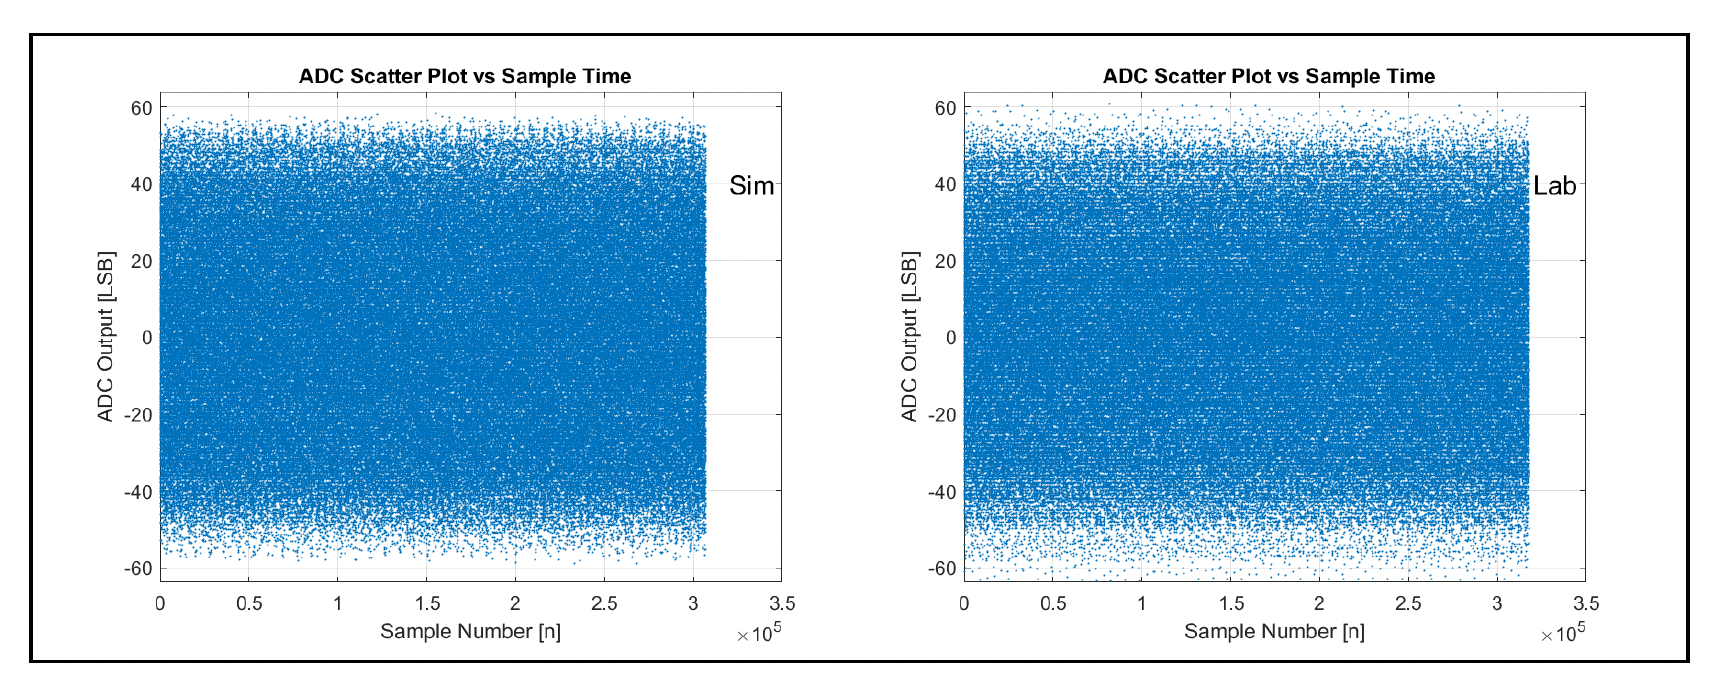 シミュレーションとシリコン ADC 出力の散布図 1.6Tbps 時代